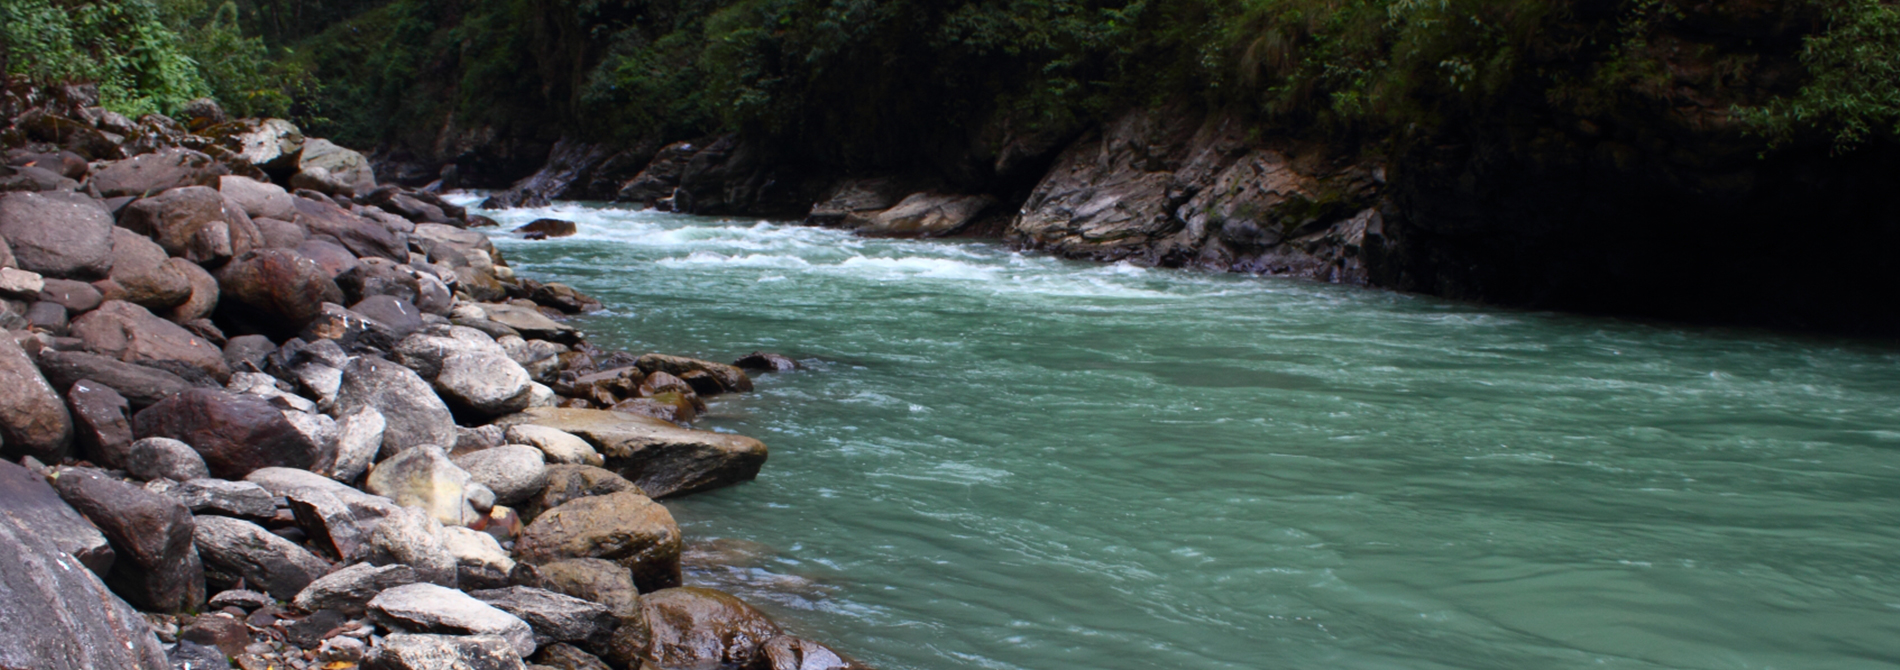 River in Nepal